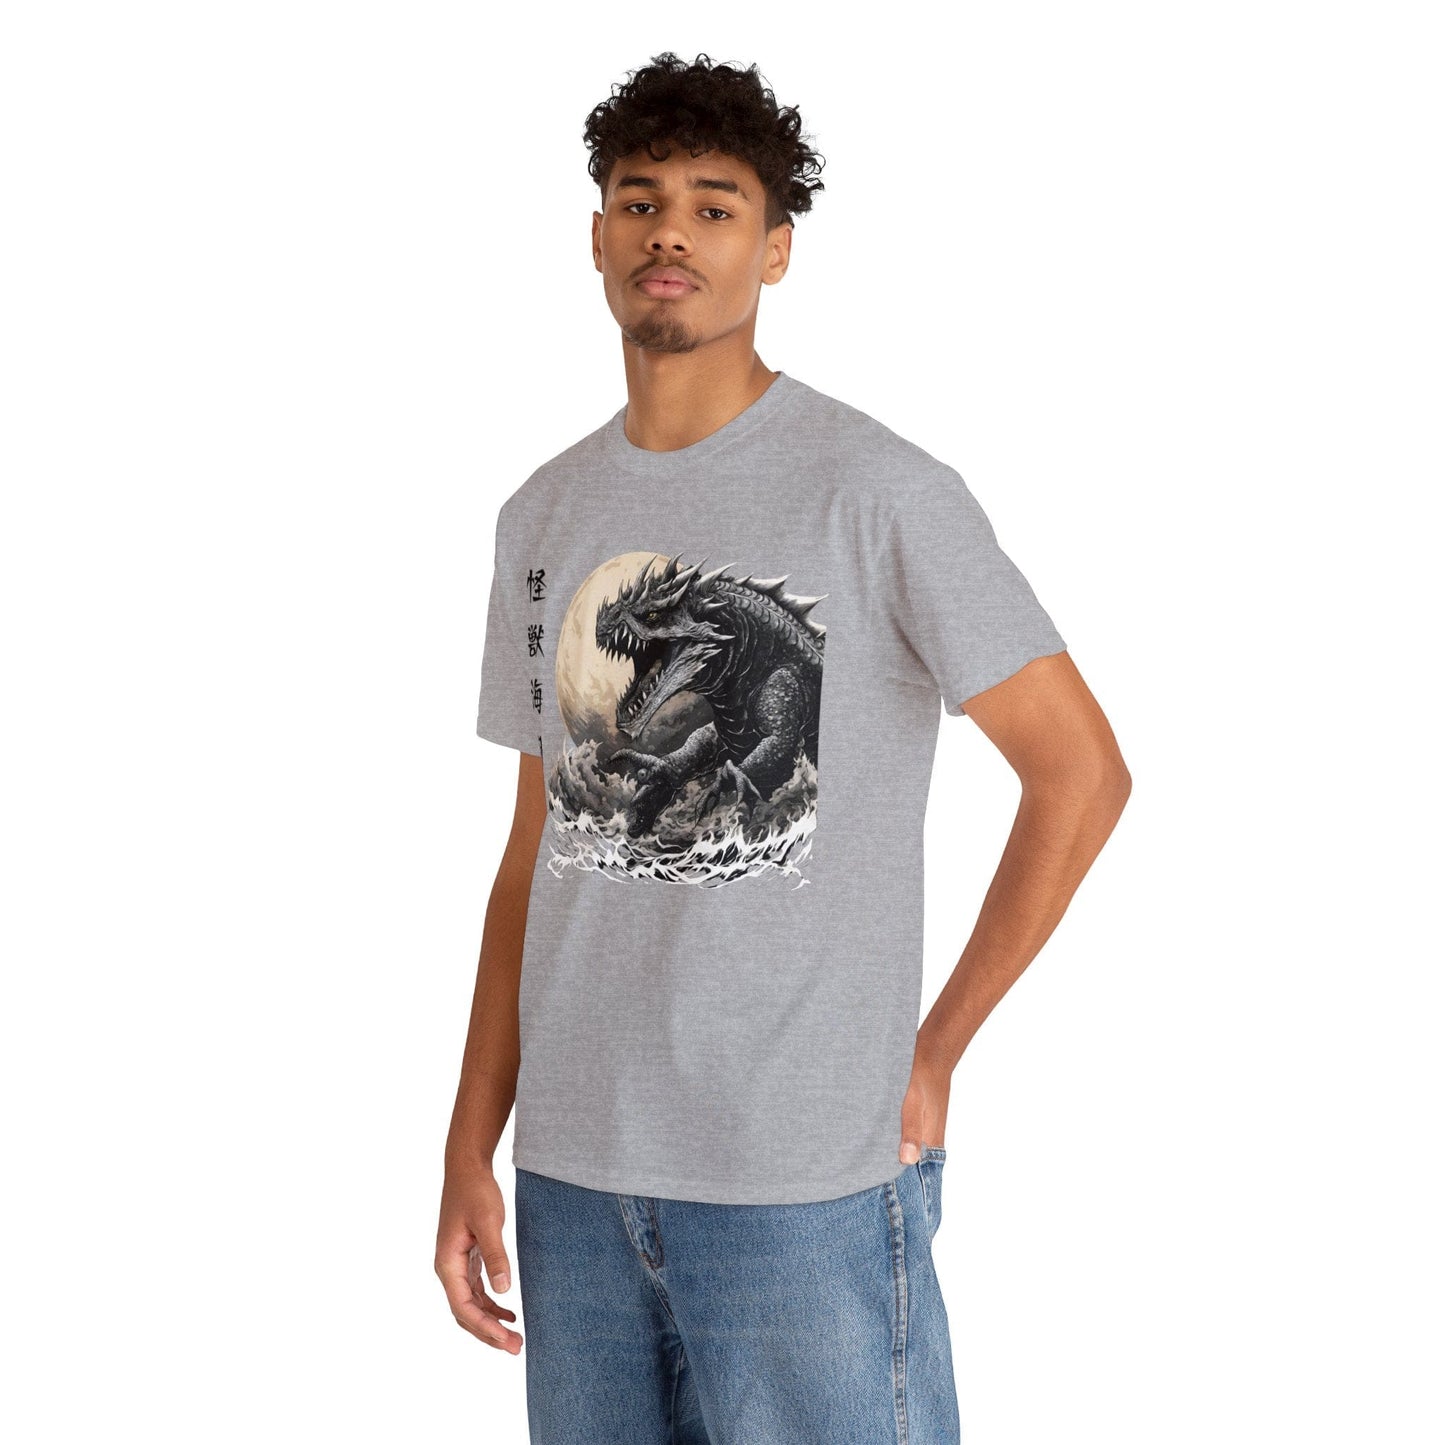 Kraken Sea Monster emerge camiseta de amenaza iluminada por la luna Flashlander